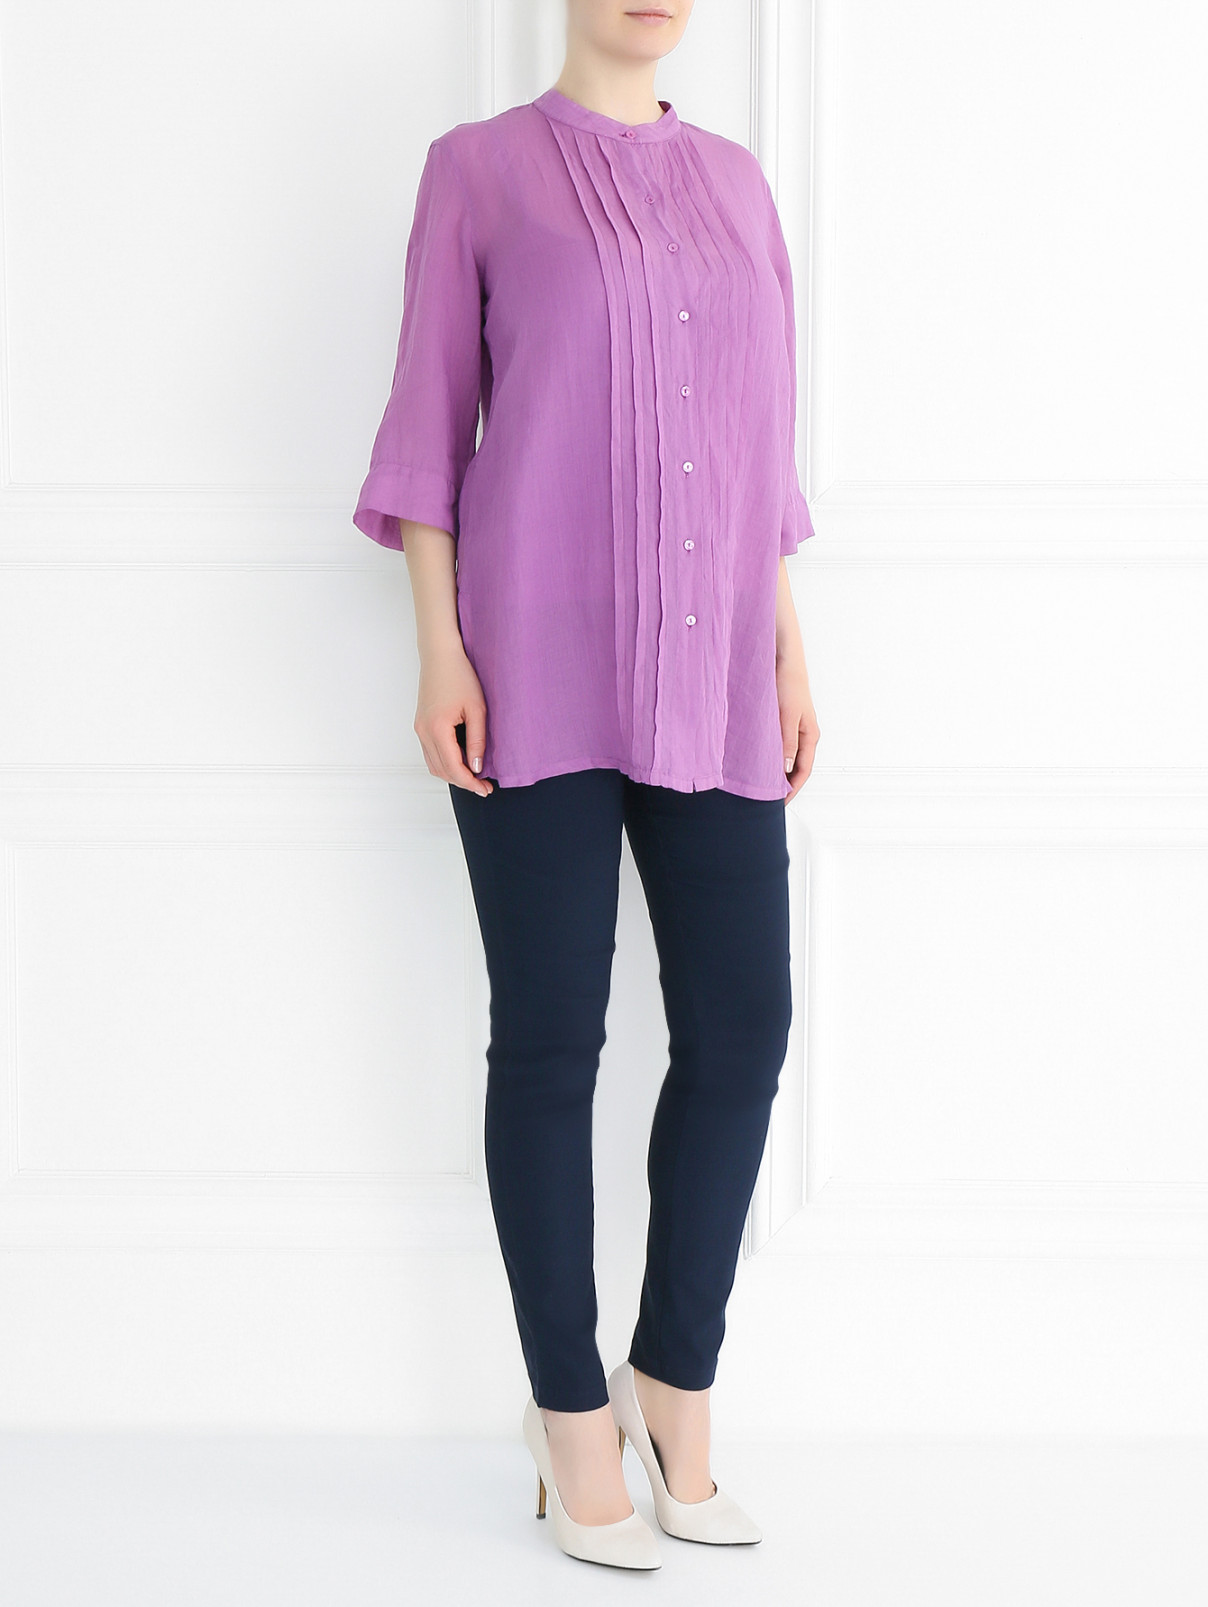 Легкая блуза на пуговицах с коротким рукавом Voyage by Marina Rinaldi  –  Модель Общий вид  – Цвет:  Фиолетовый